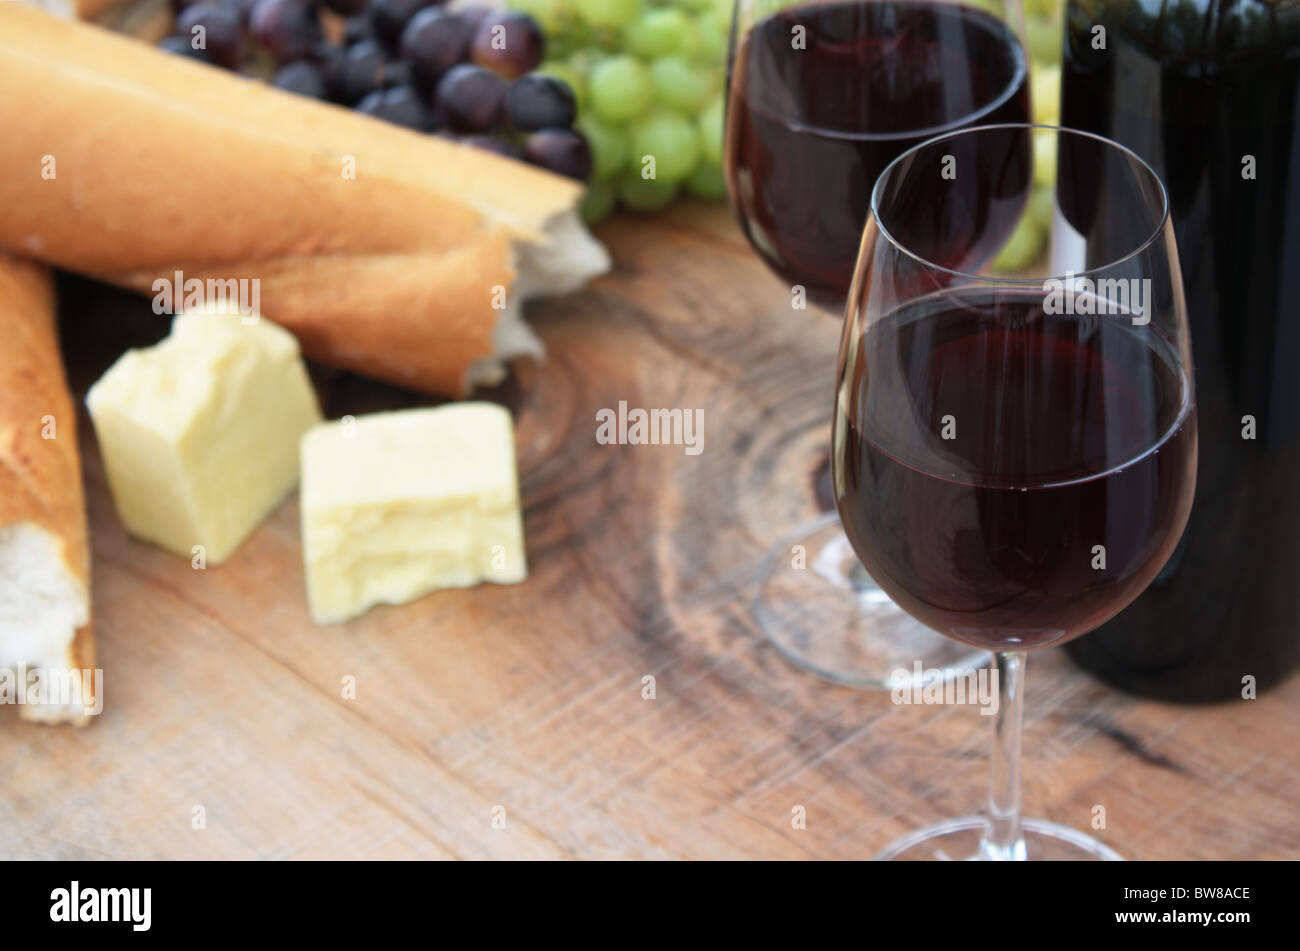 Wein, Brot, Käse, Trauben auf hölzernen Gartentisch Stockfoto